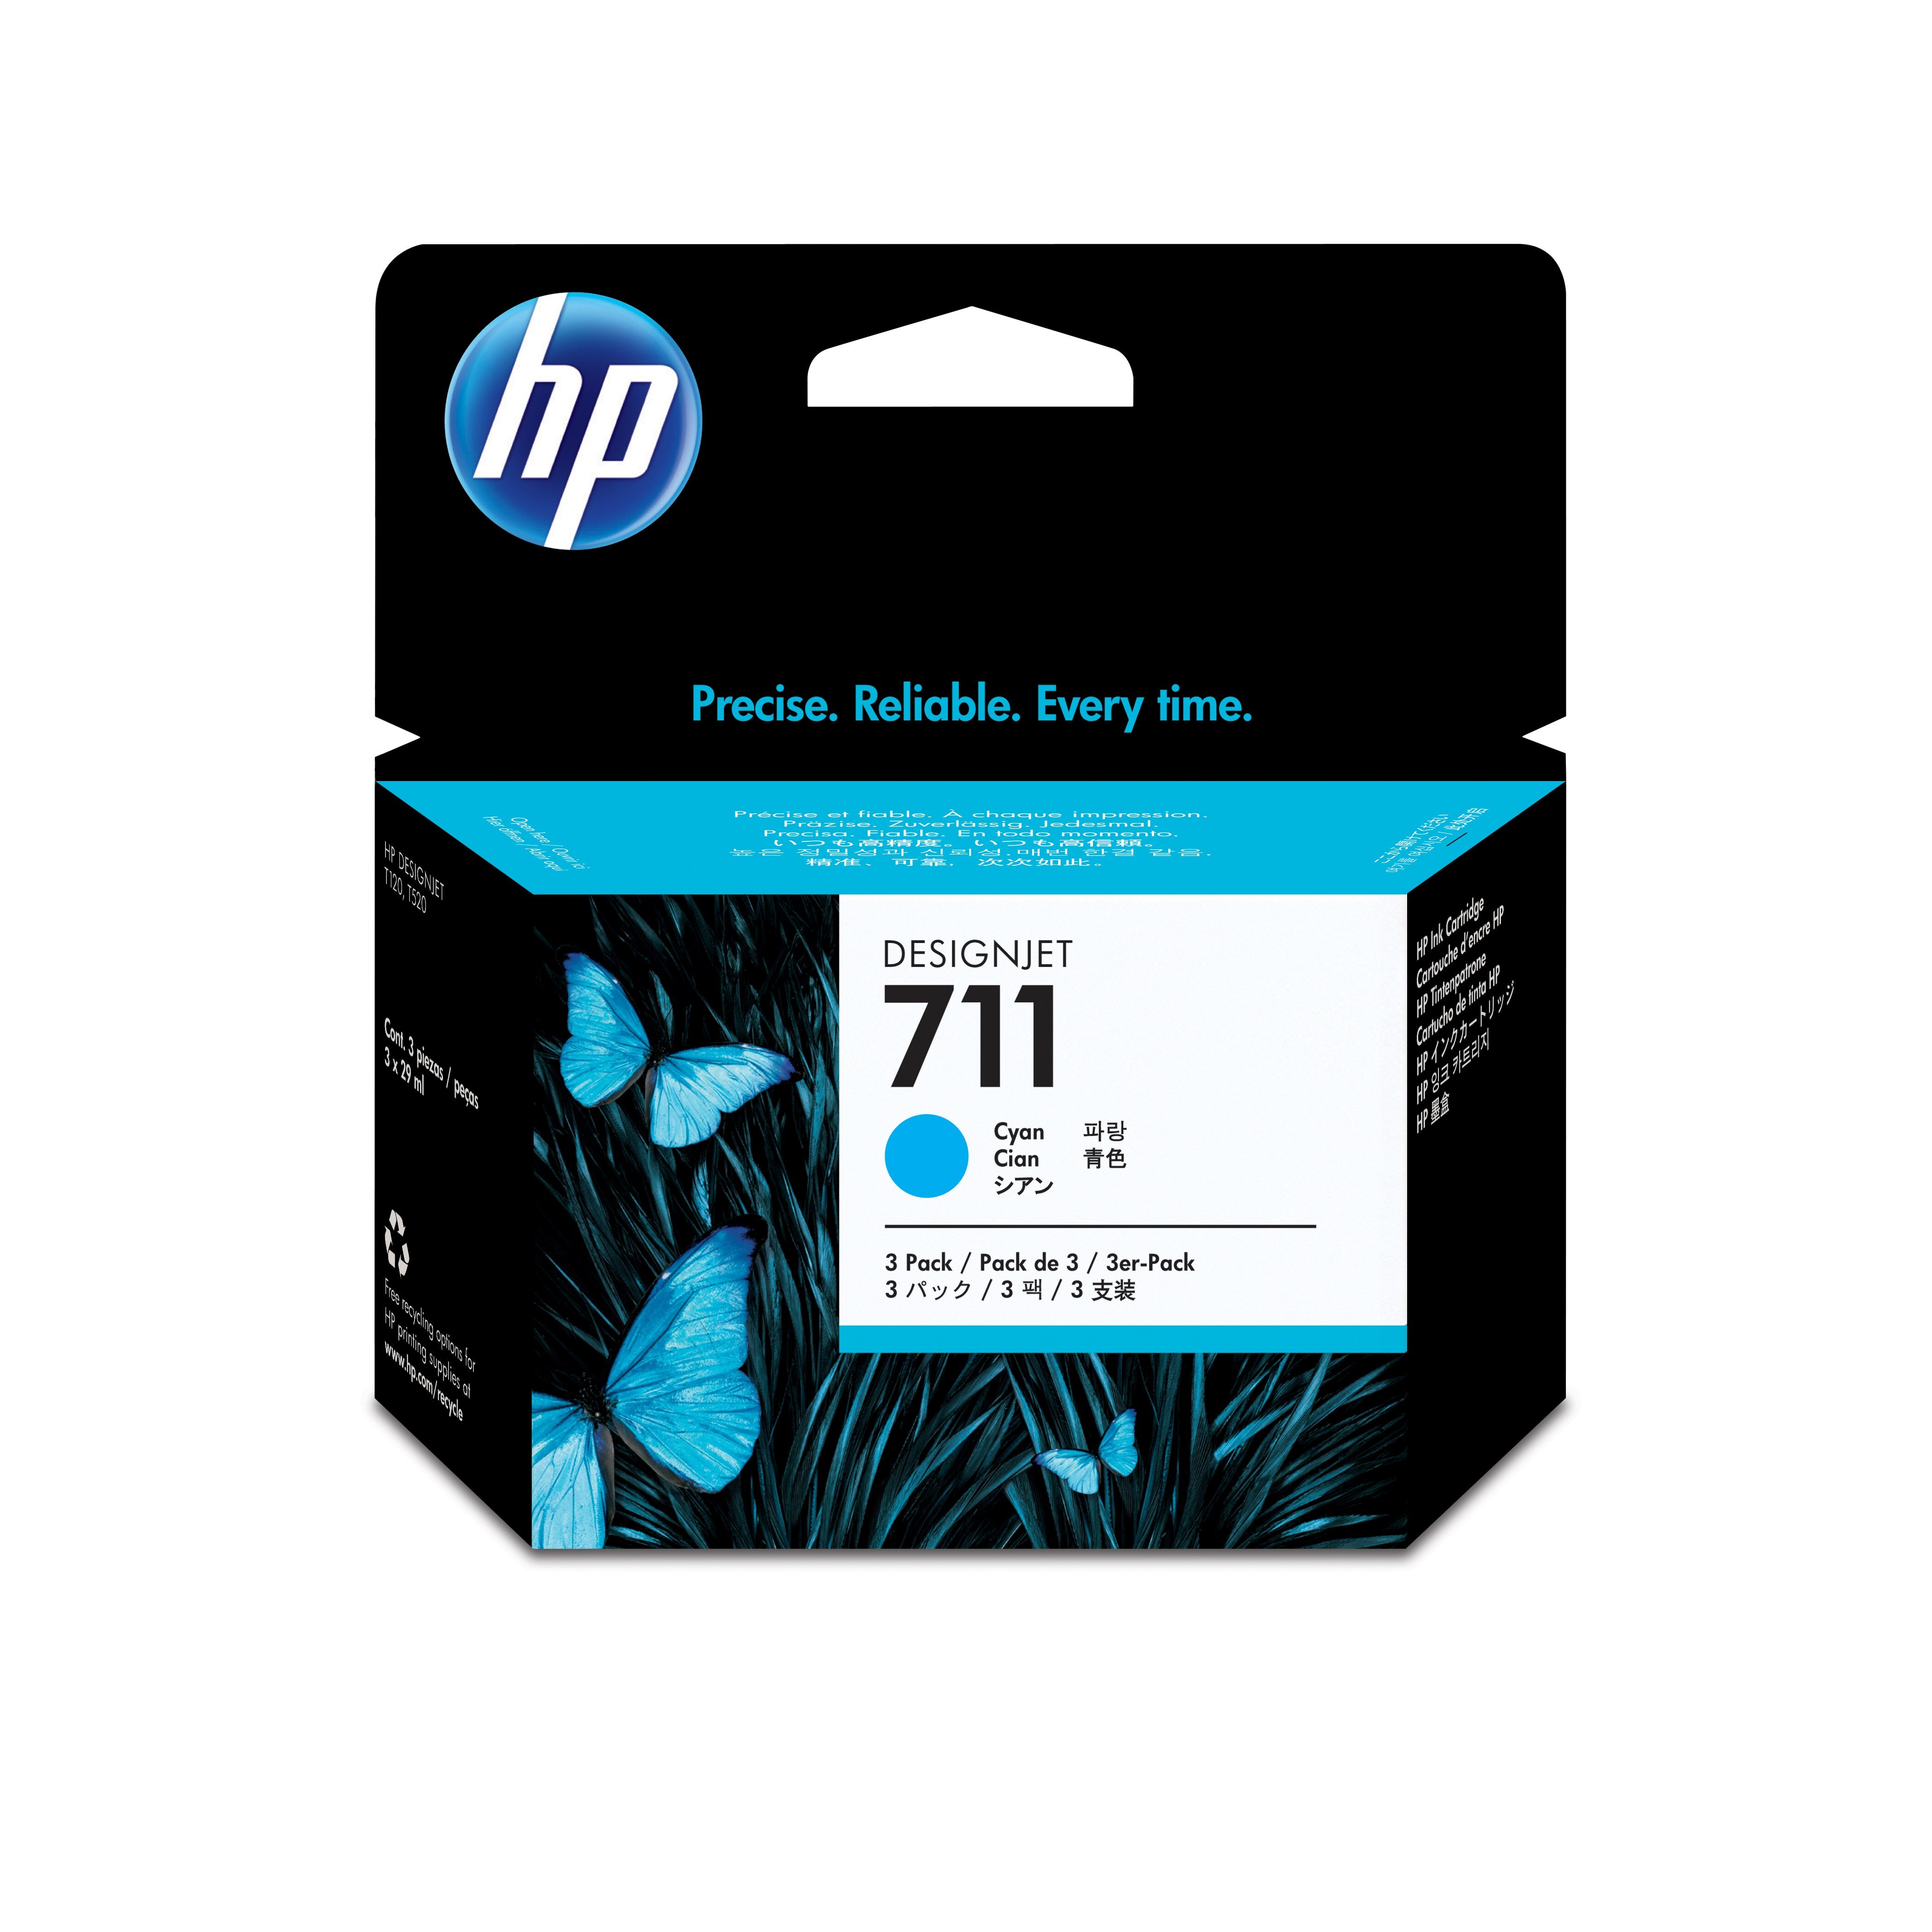 HP 711 cyaan DesignJet inktcartridges, 29 ml, 3-pack multi pack / cyaan